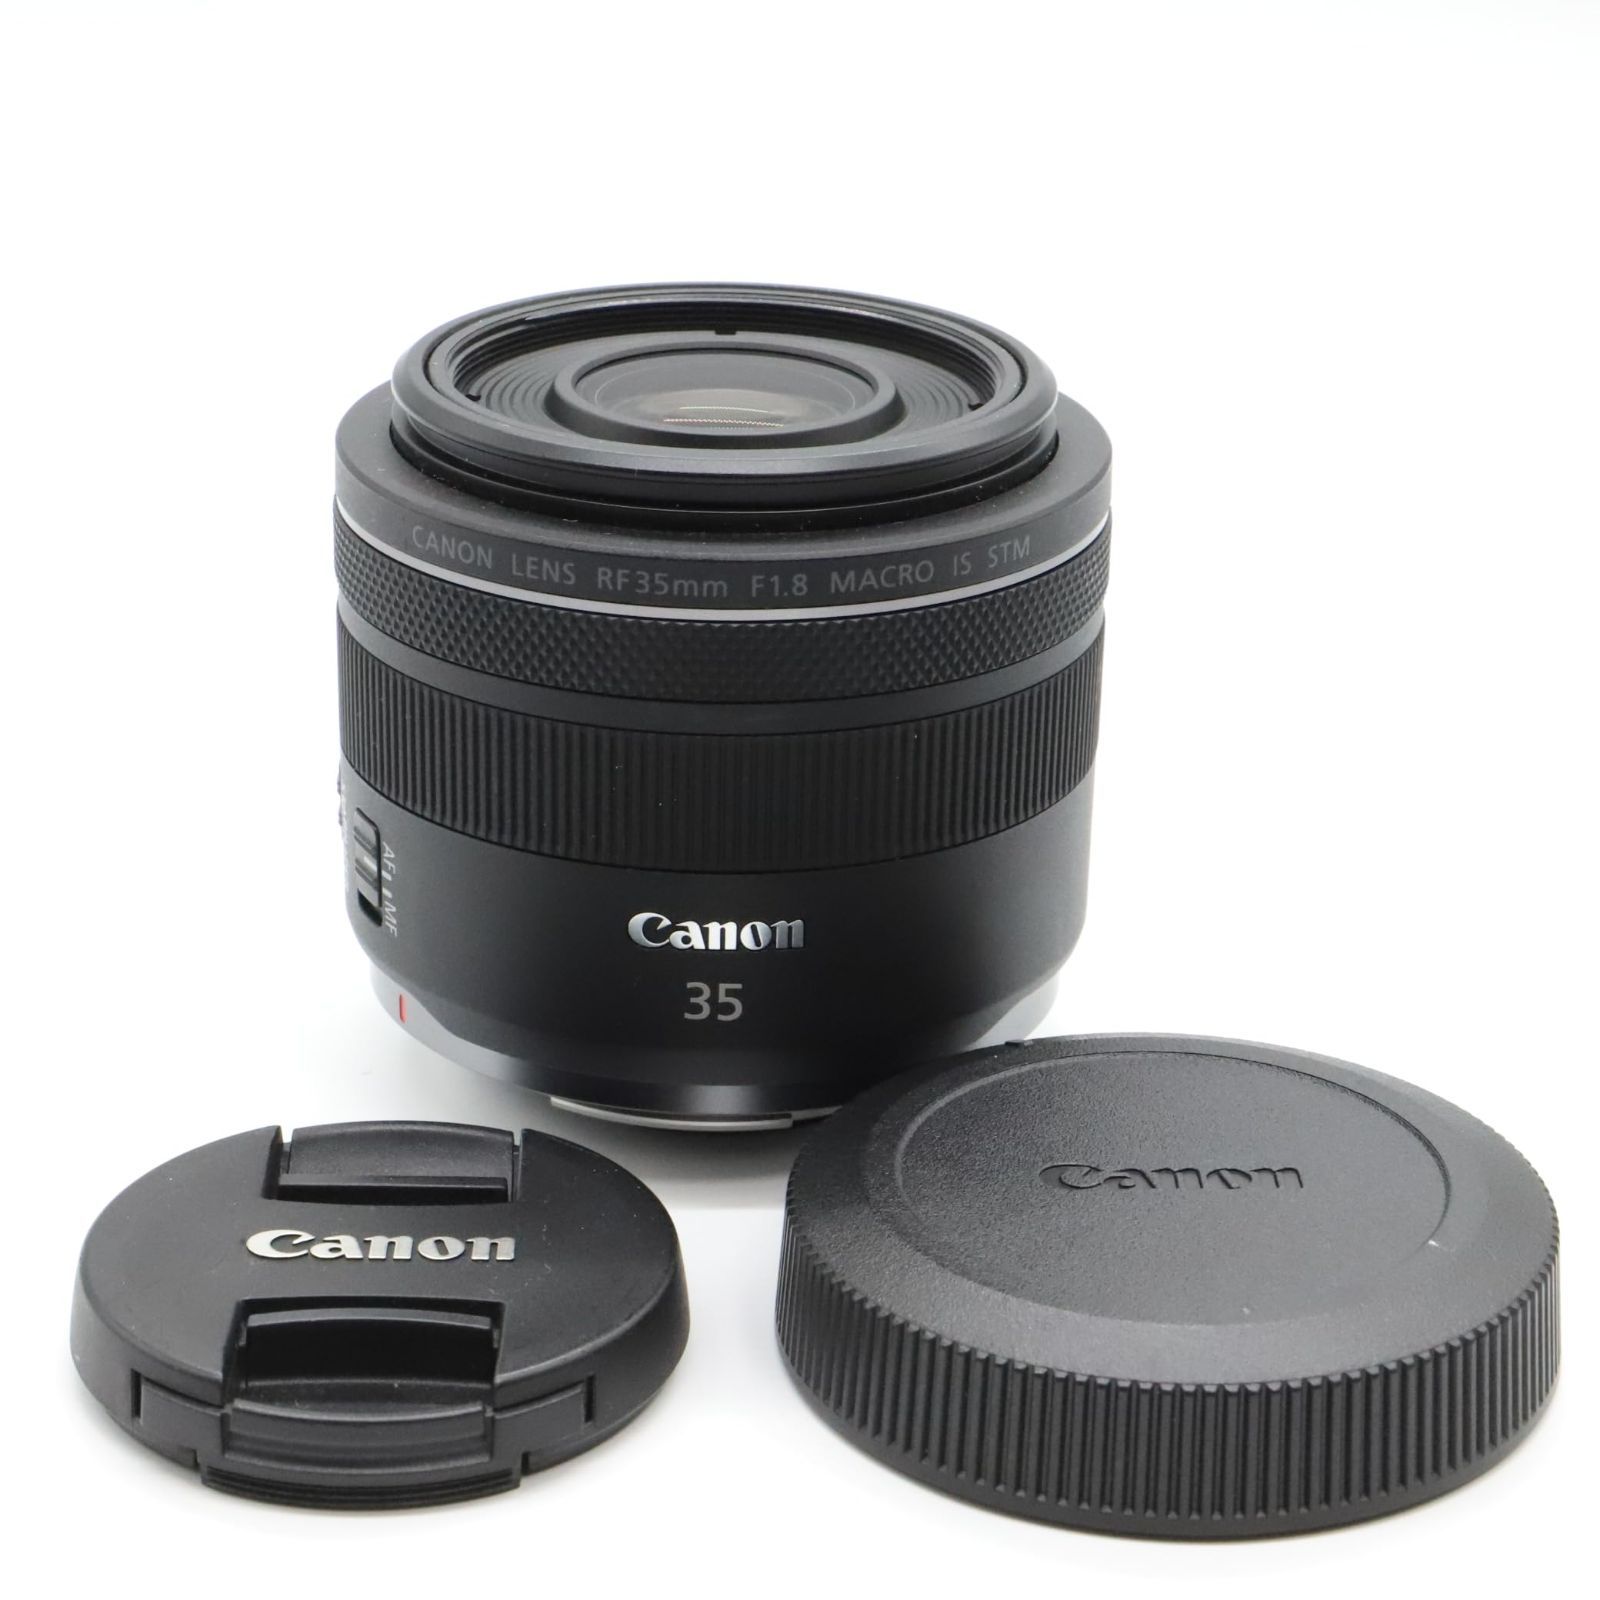 良品】Canon 単焦点広角レンズ RF35mm F1.8 マクロ IS STM EOSR対応